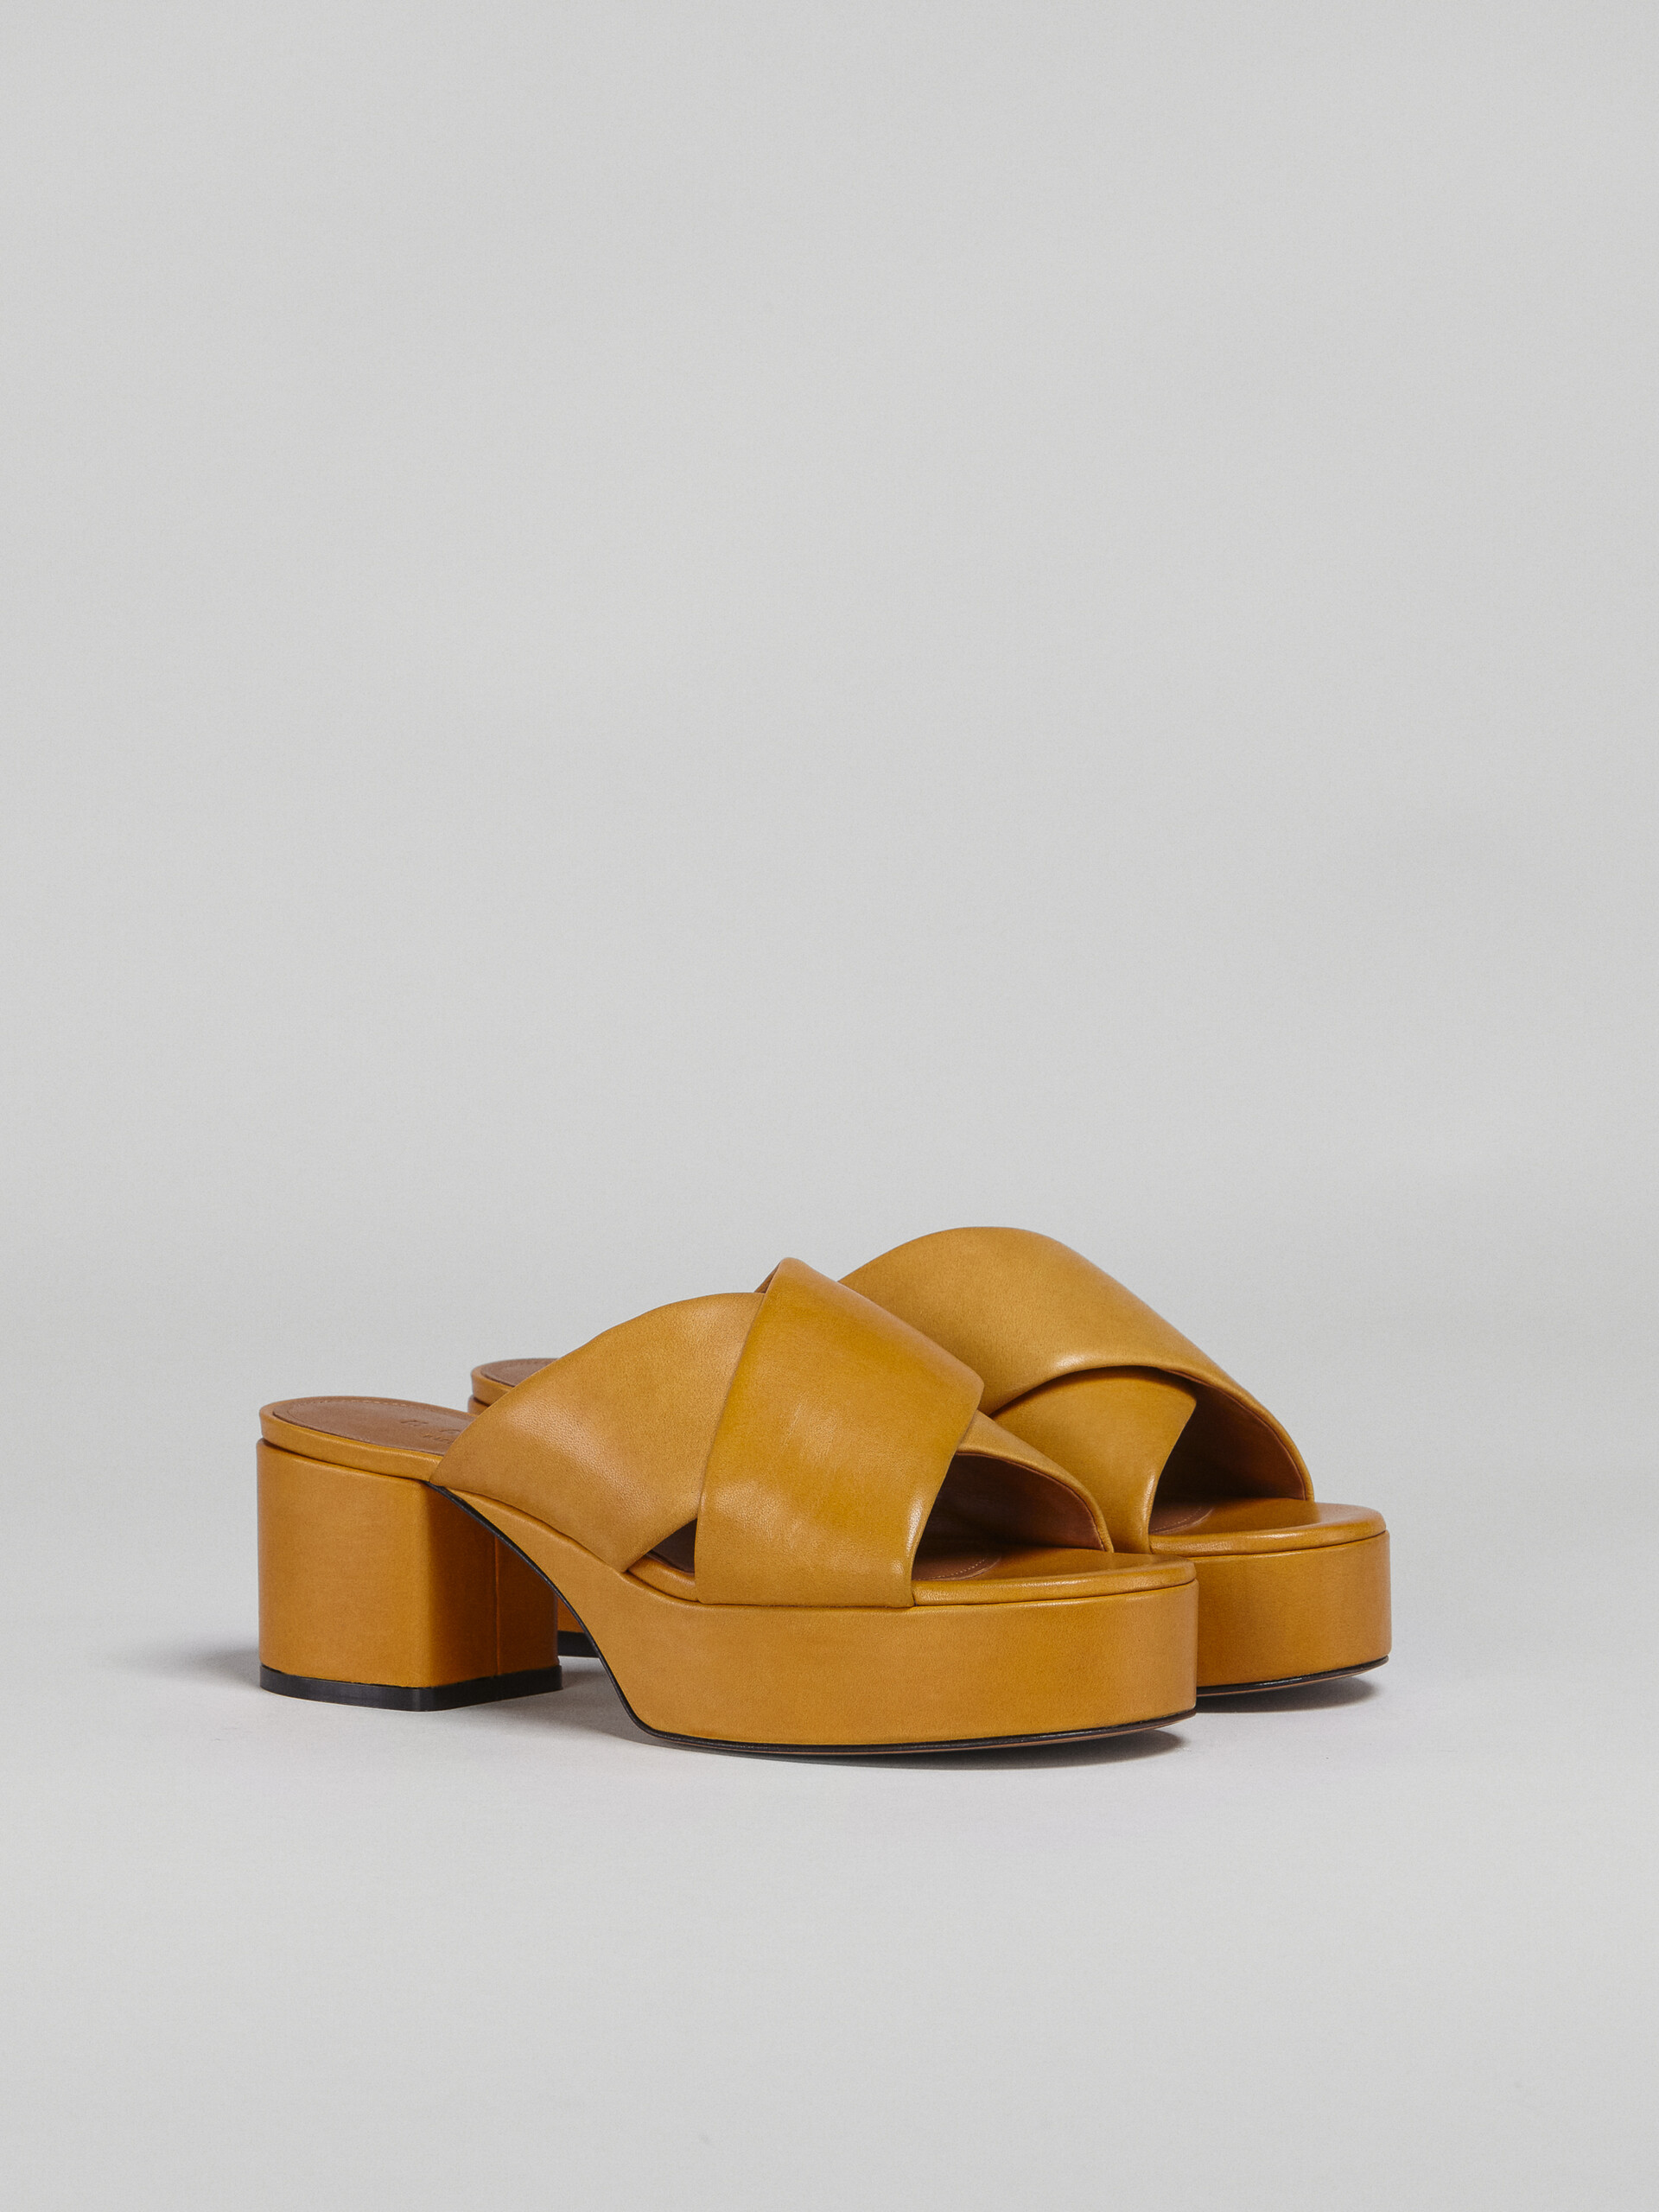 Sandale en cuir jaune tannage végétal - Sandales - Image 2